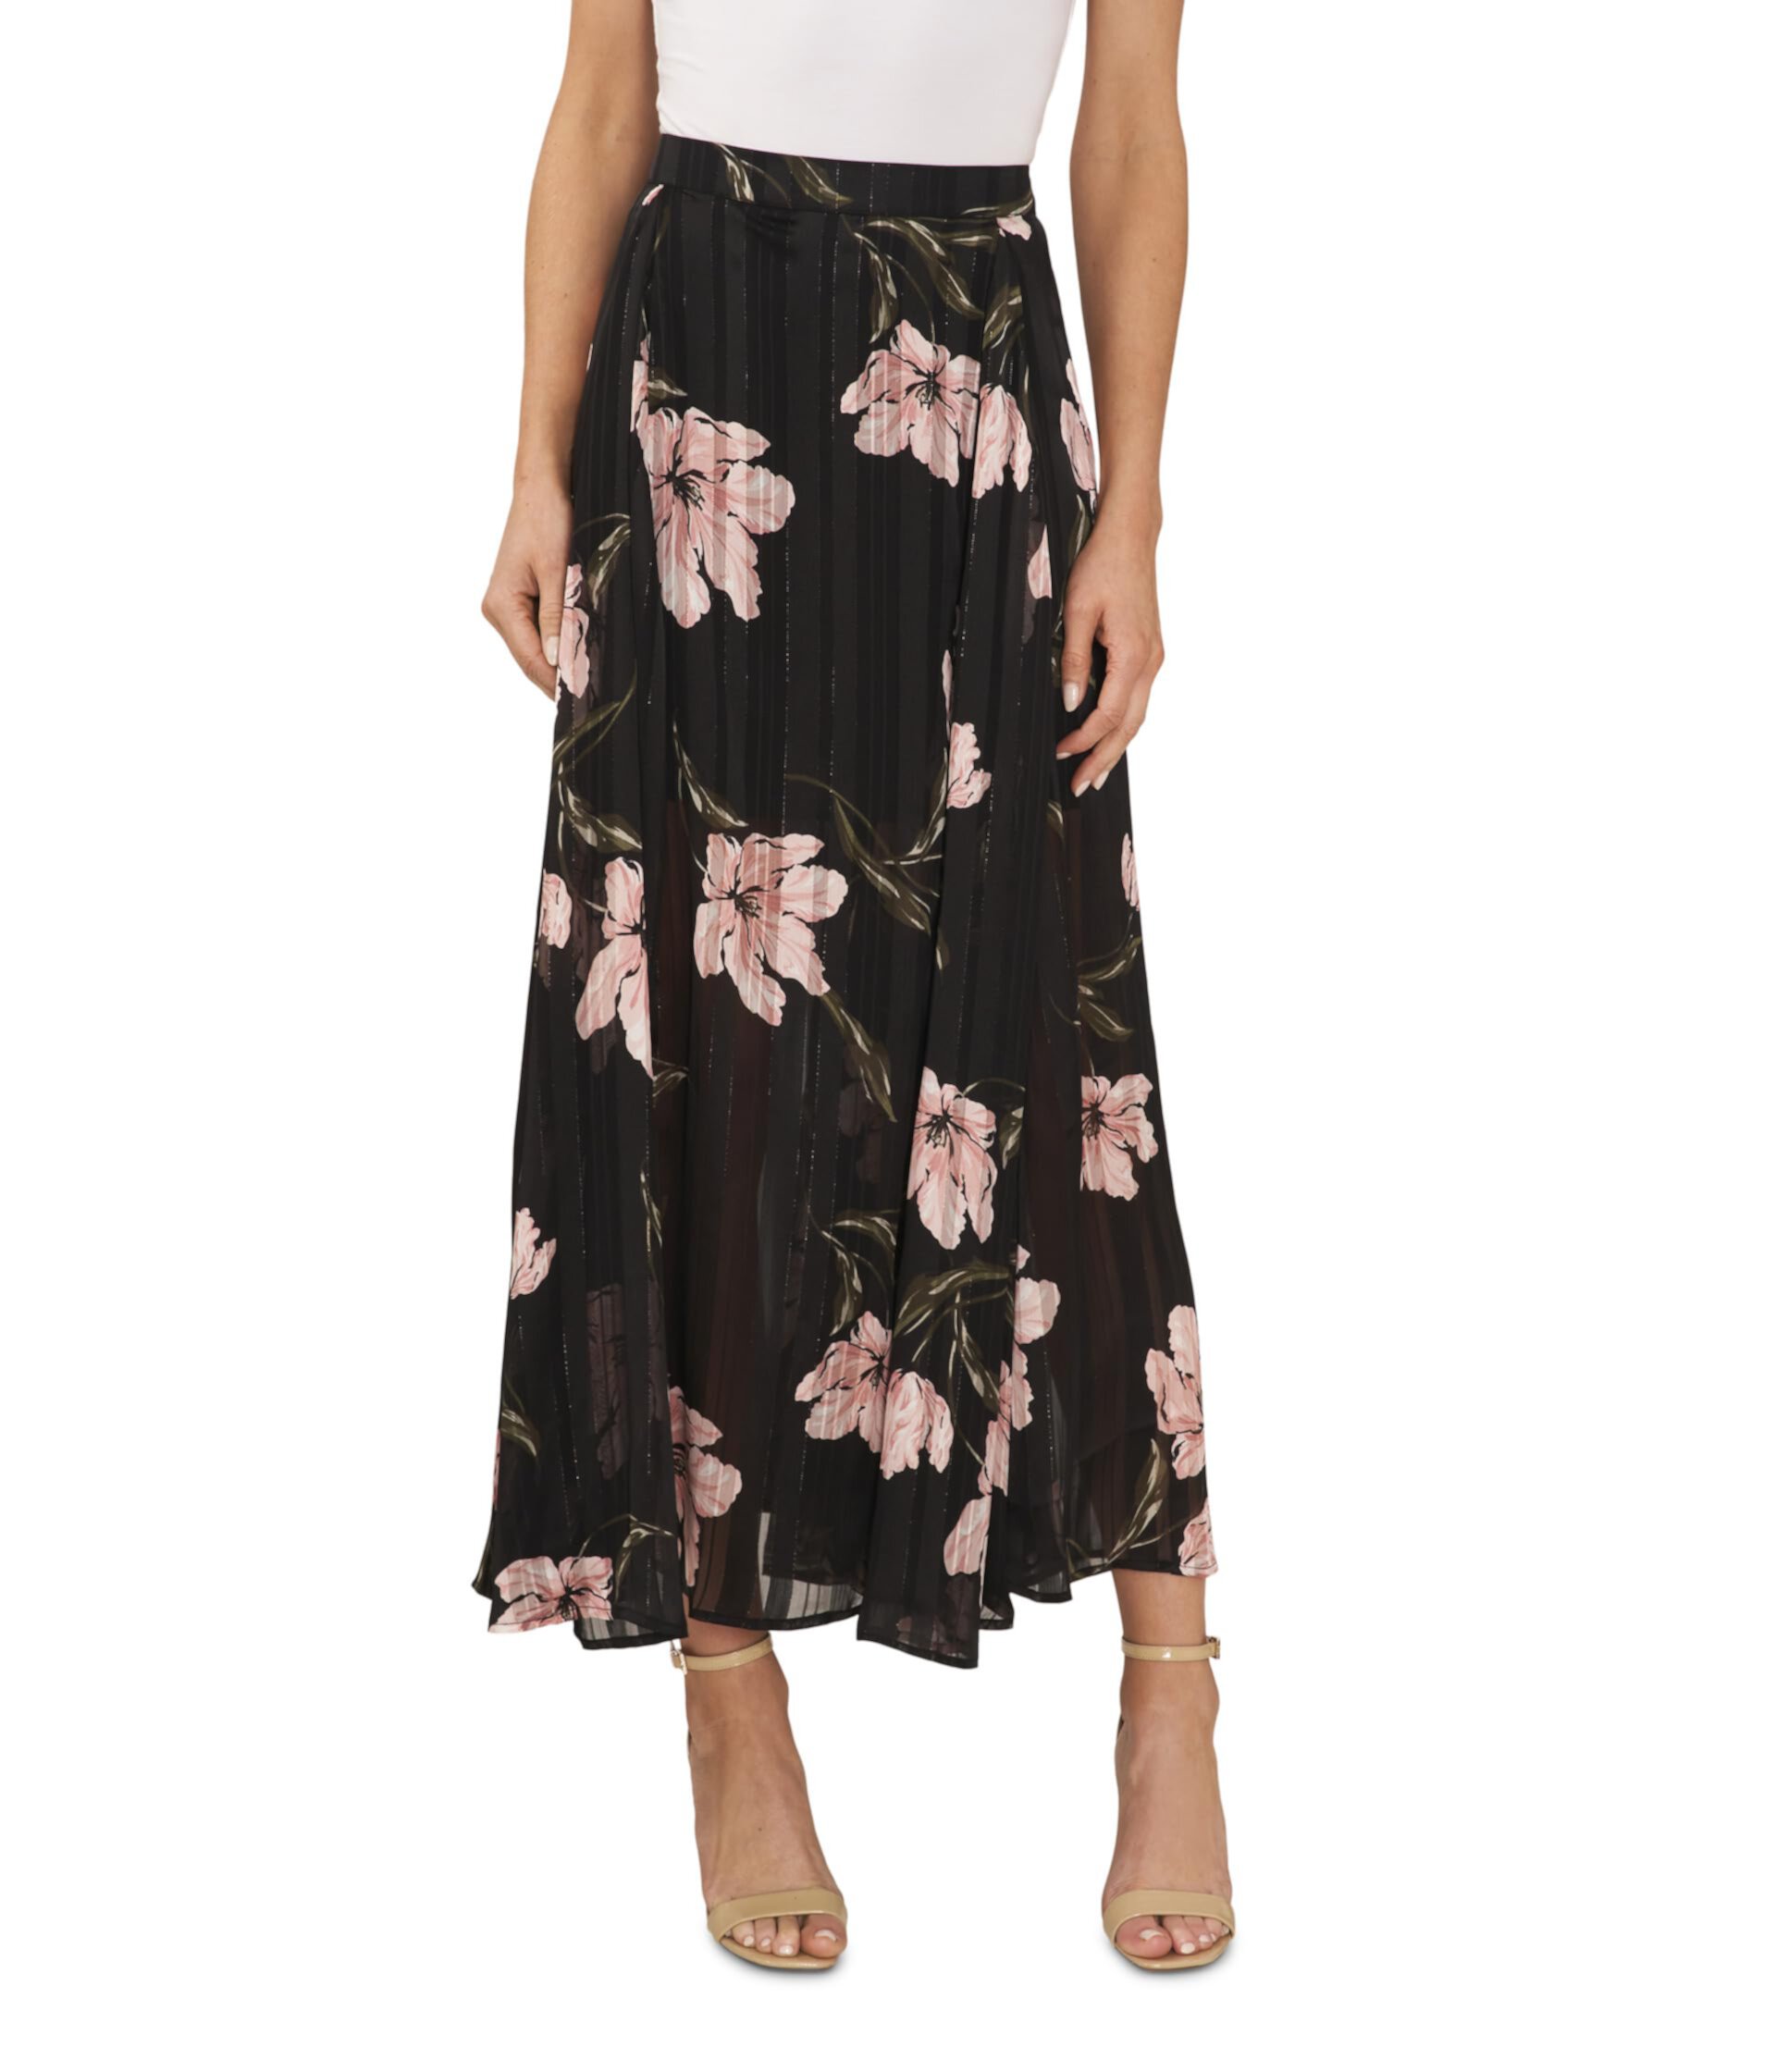 Плиссированная юбка-миди с цветочным принтом CeCe